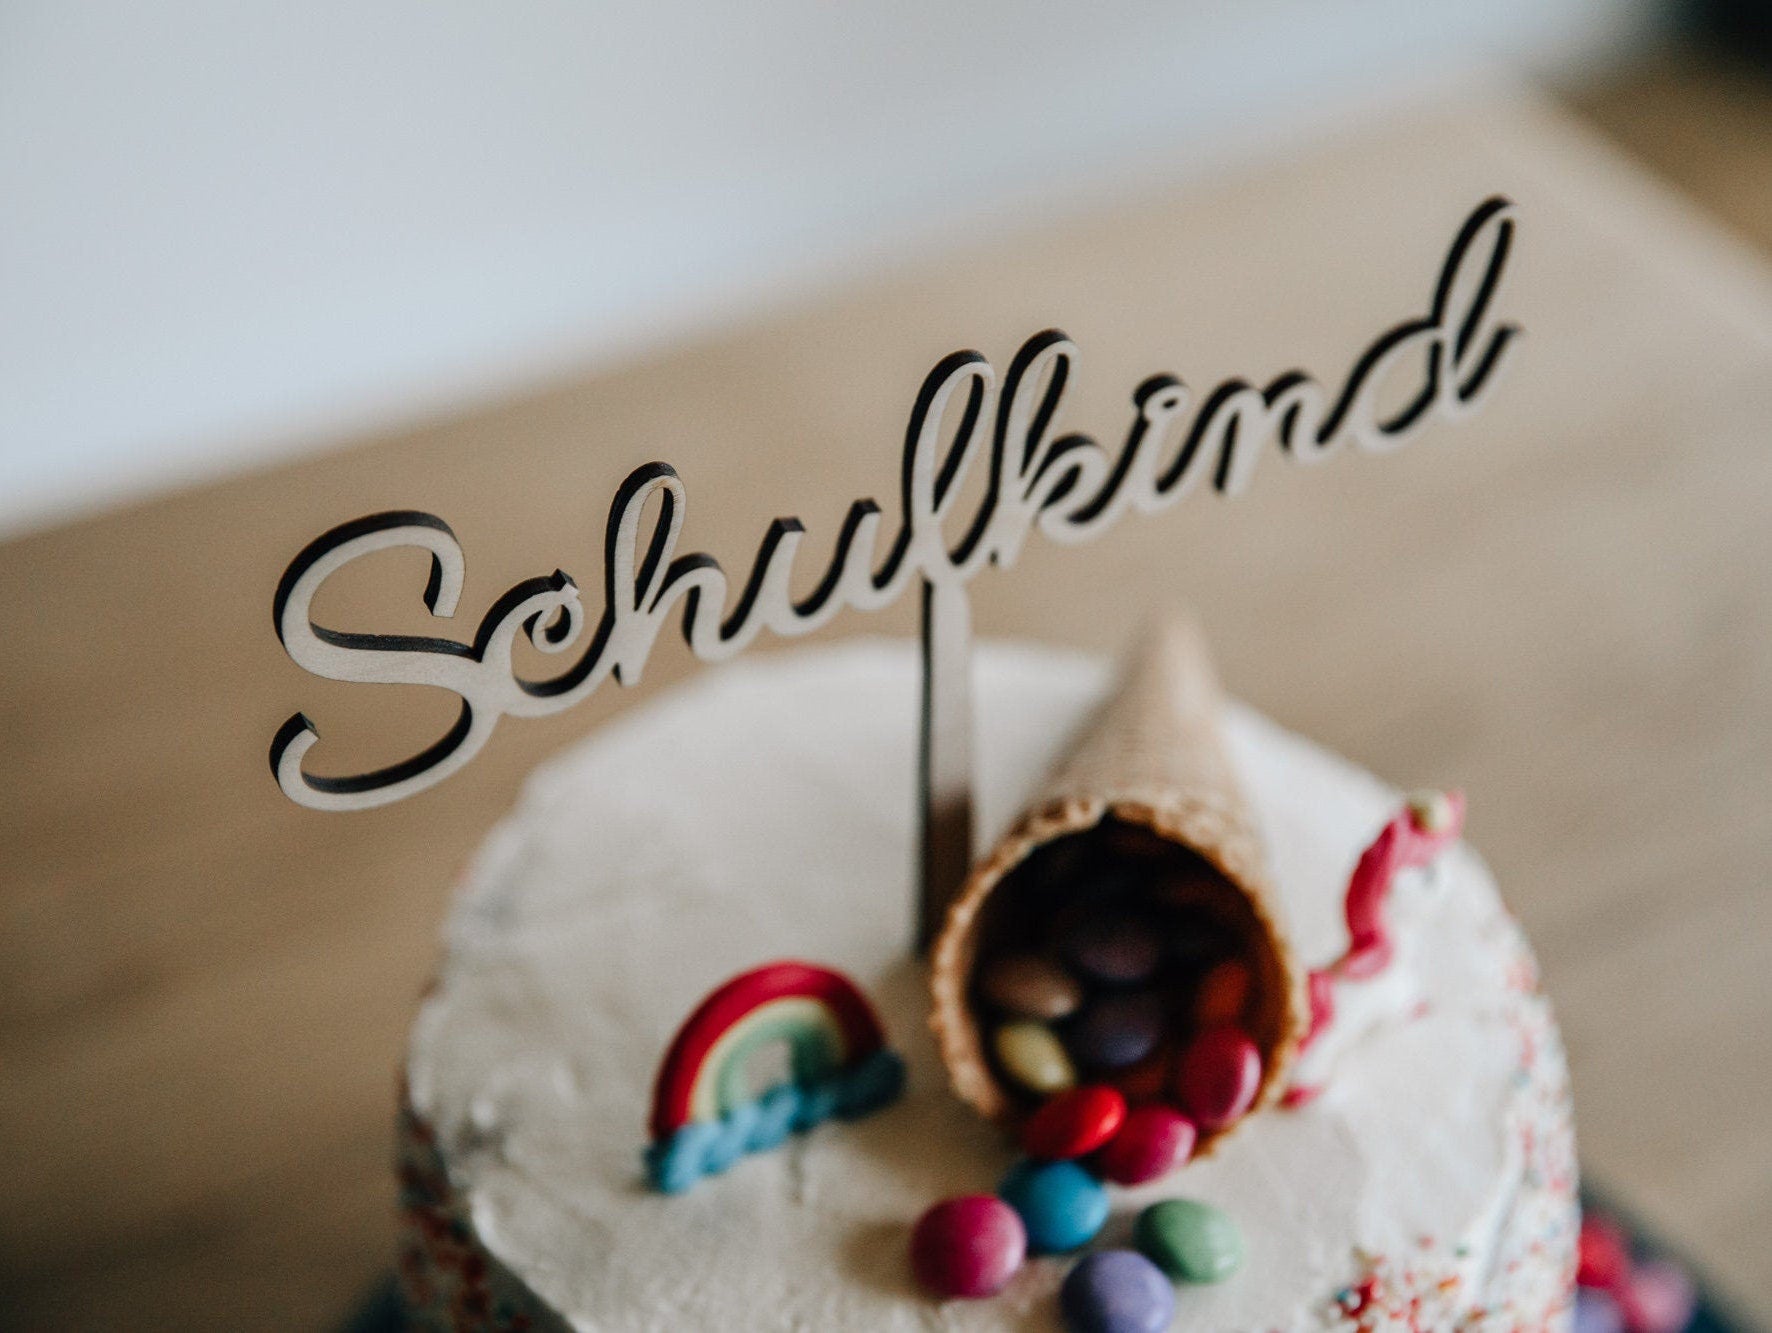 Schulkind Cake Topper / Kuchendeko Einschulung / Kuchen Topper Schulkind